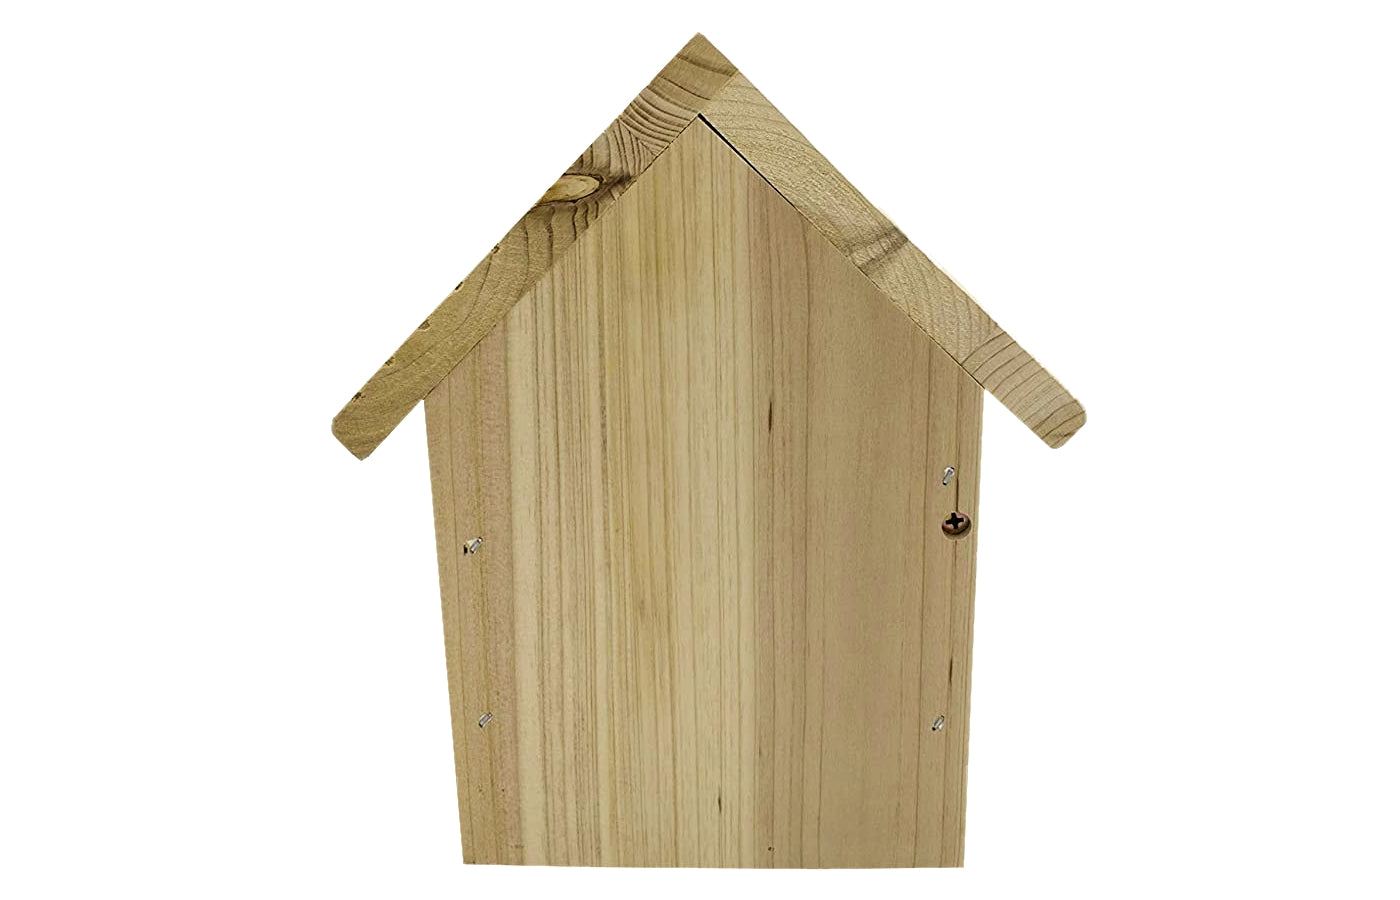 Walter Harrison's - Wooden Apex Wild Bird Nest Box